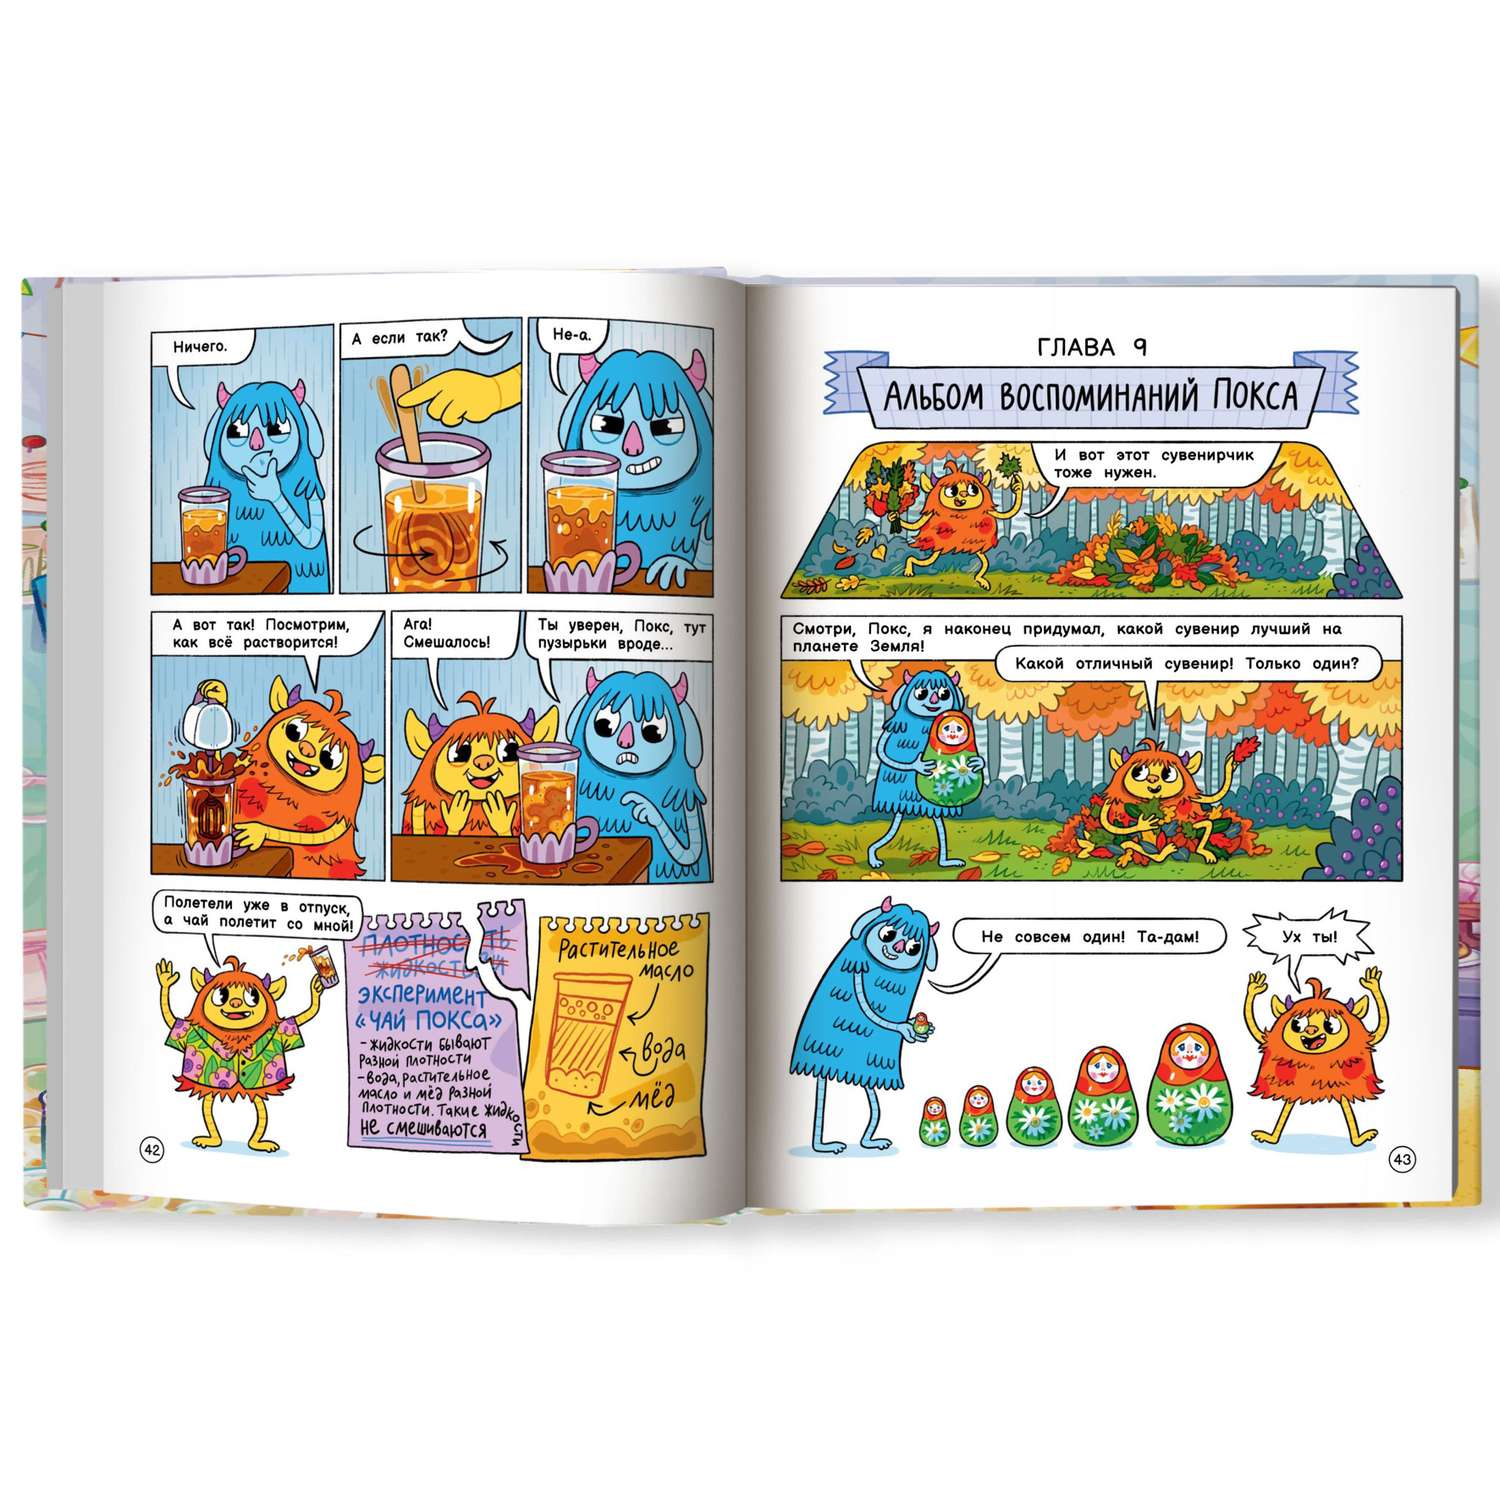 Книга Феникс Премьер Нескучные опыты с Оксом и Поксом : Комиксы для детей - фото 10